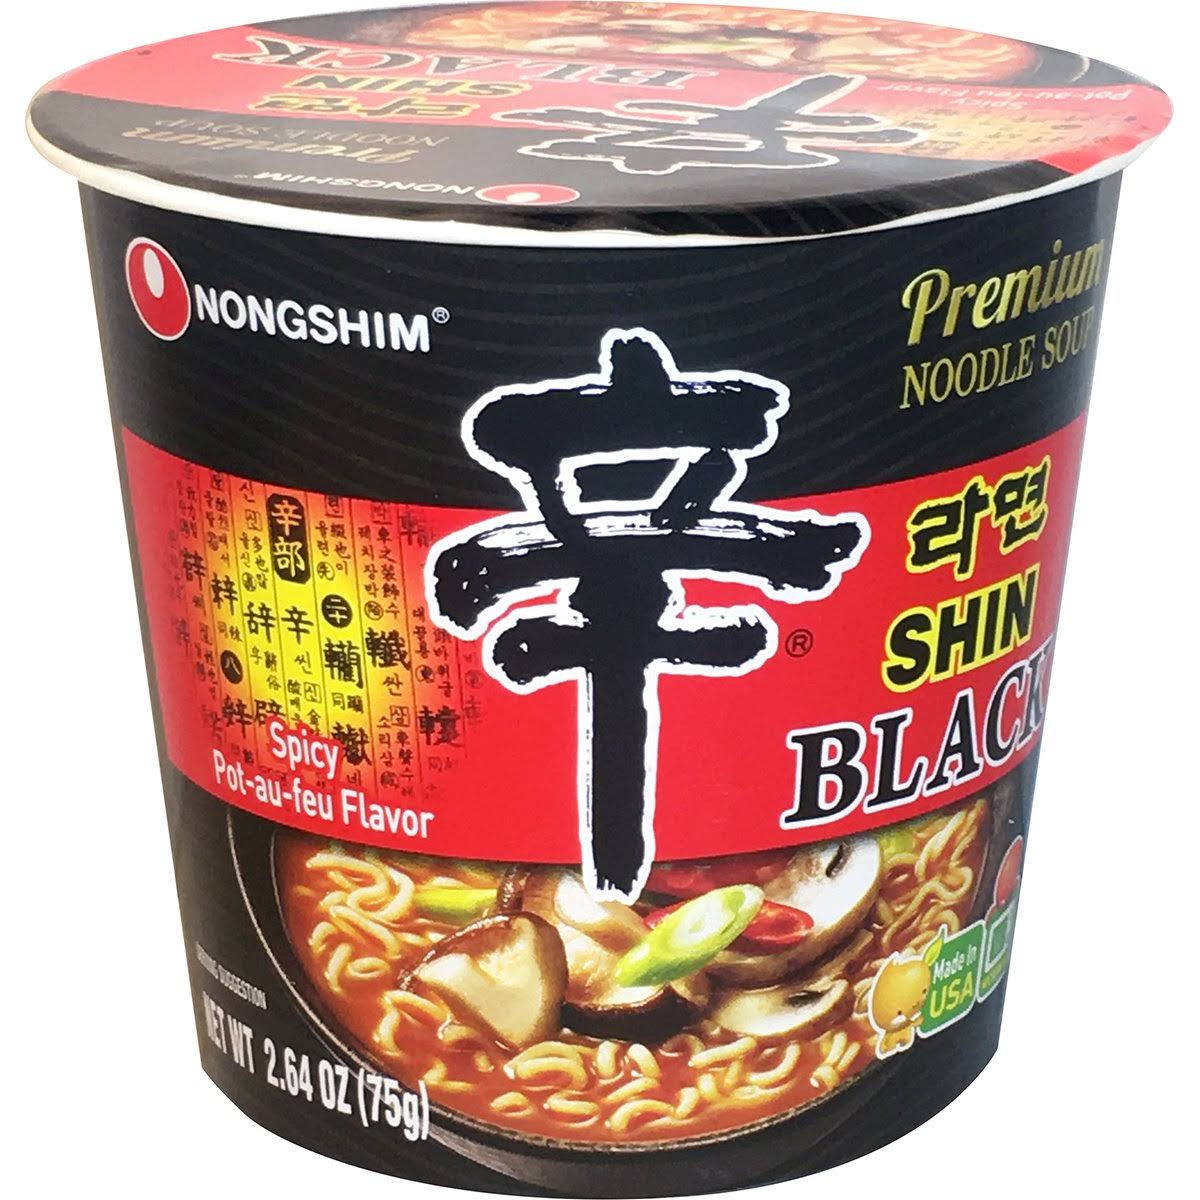 Nongshim Shin Noodle Soup, Premium, Spicy Pot-Ae-Feu, Black - 2.64 oz